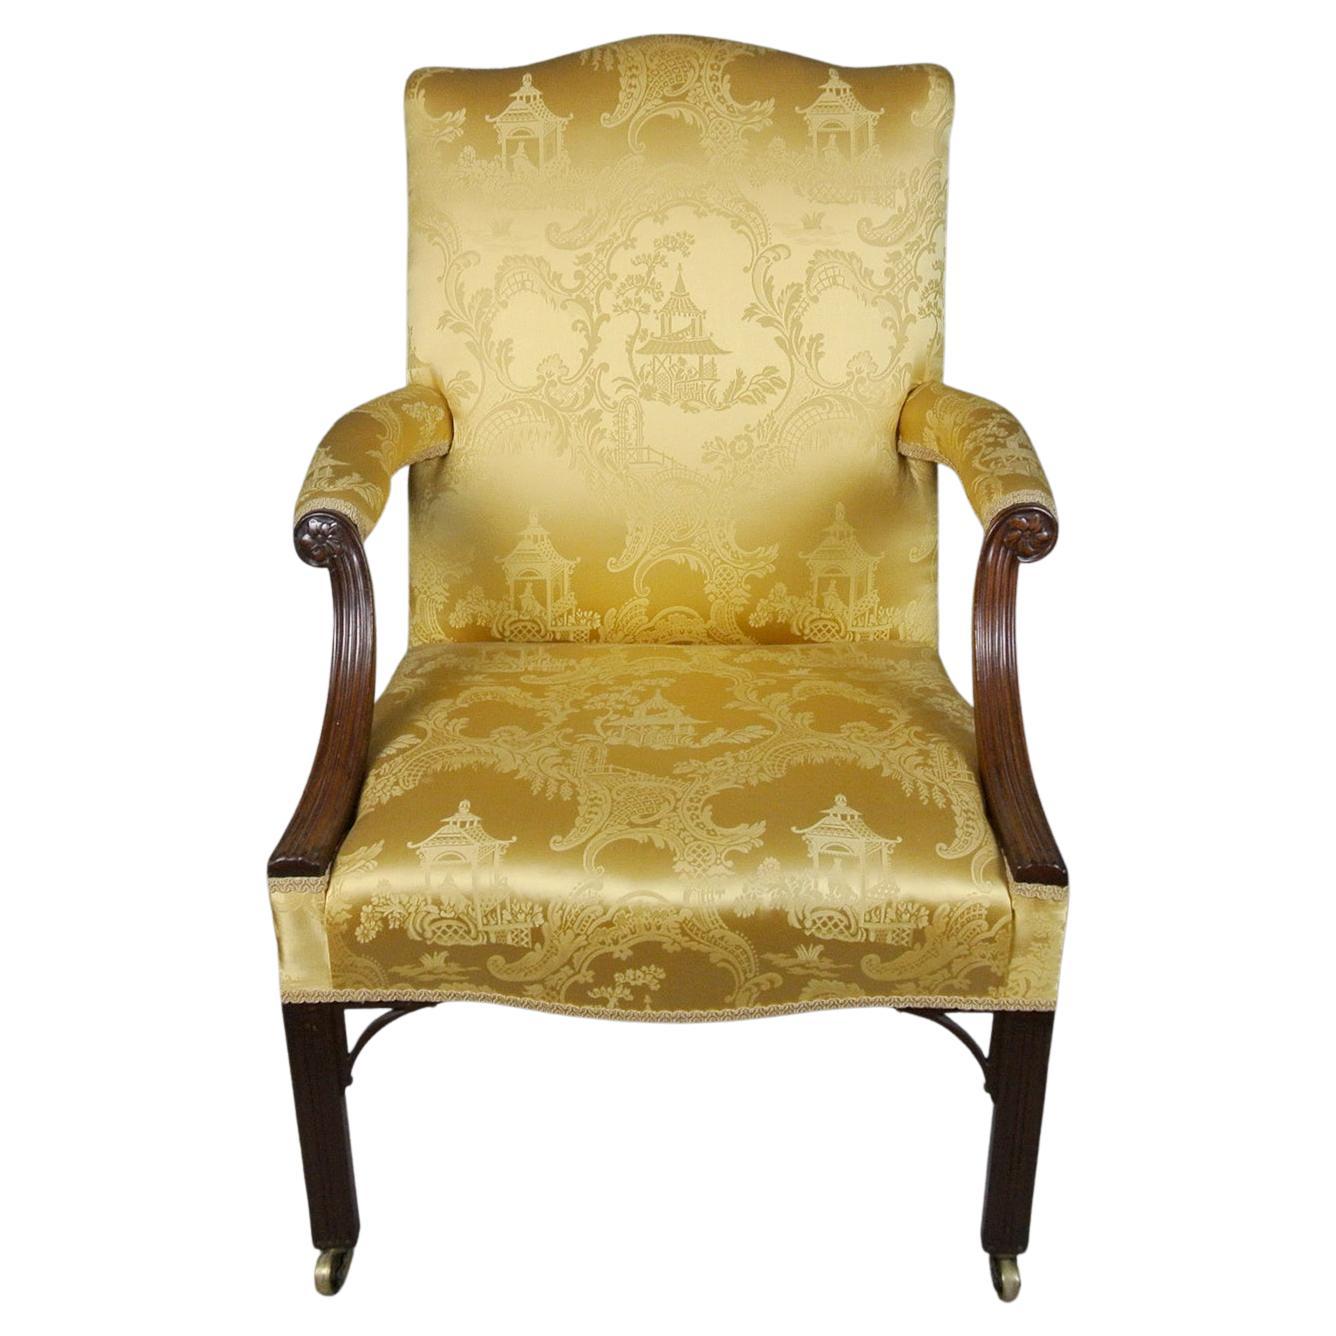 Exemplarischer Gainsborough-Stuhl aus Mahagoni im George-II-Stil, um 1750